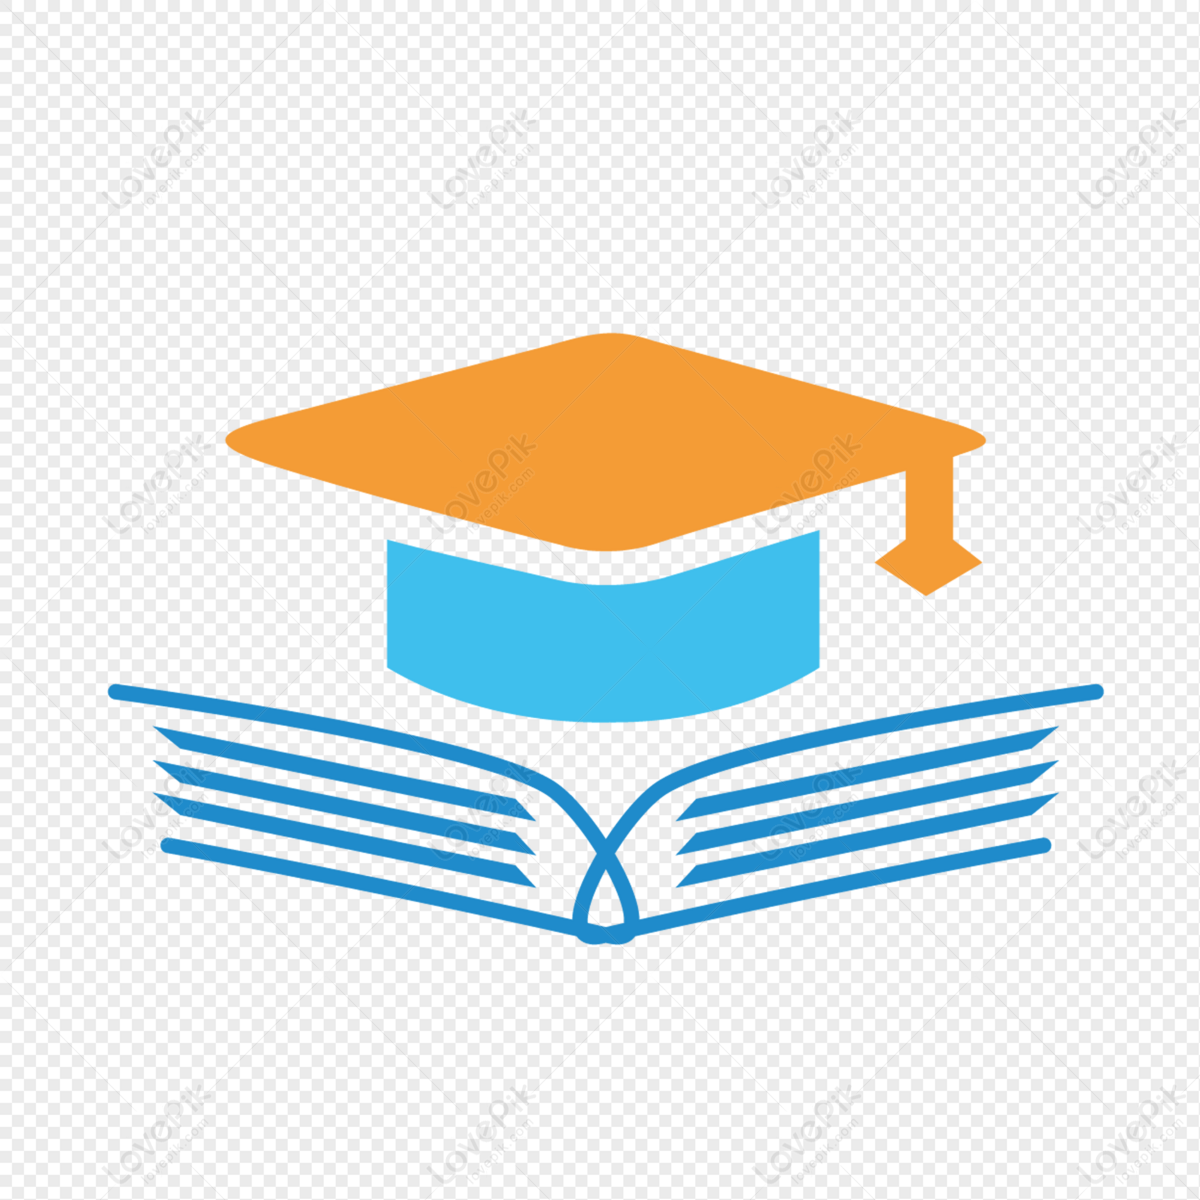 Education LOGO, academic logo, logo, training institutions png image